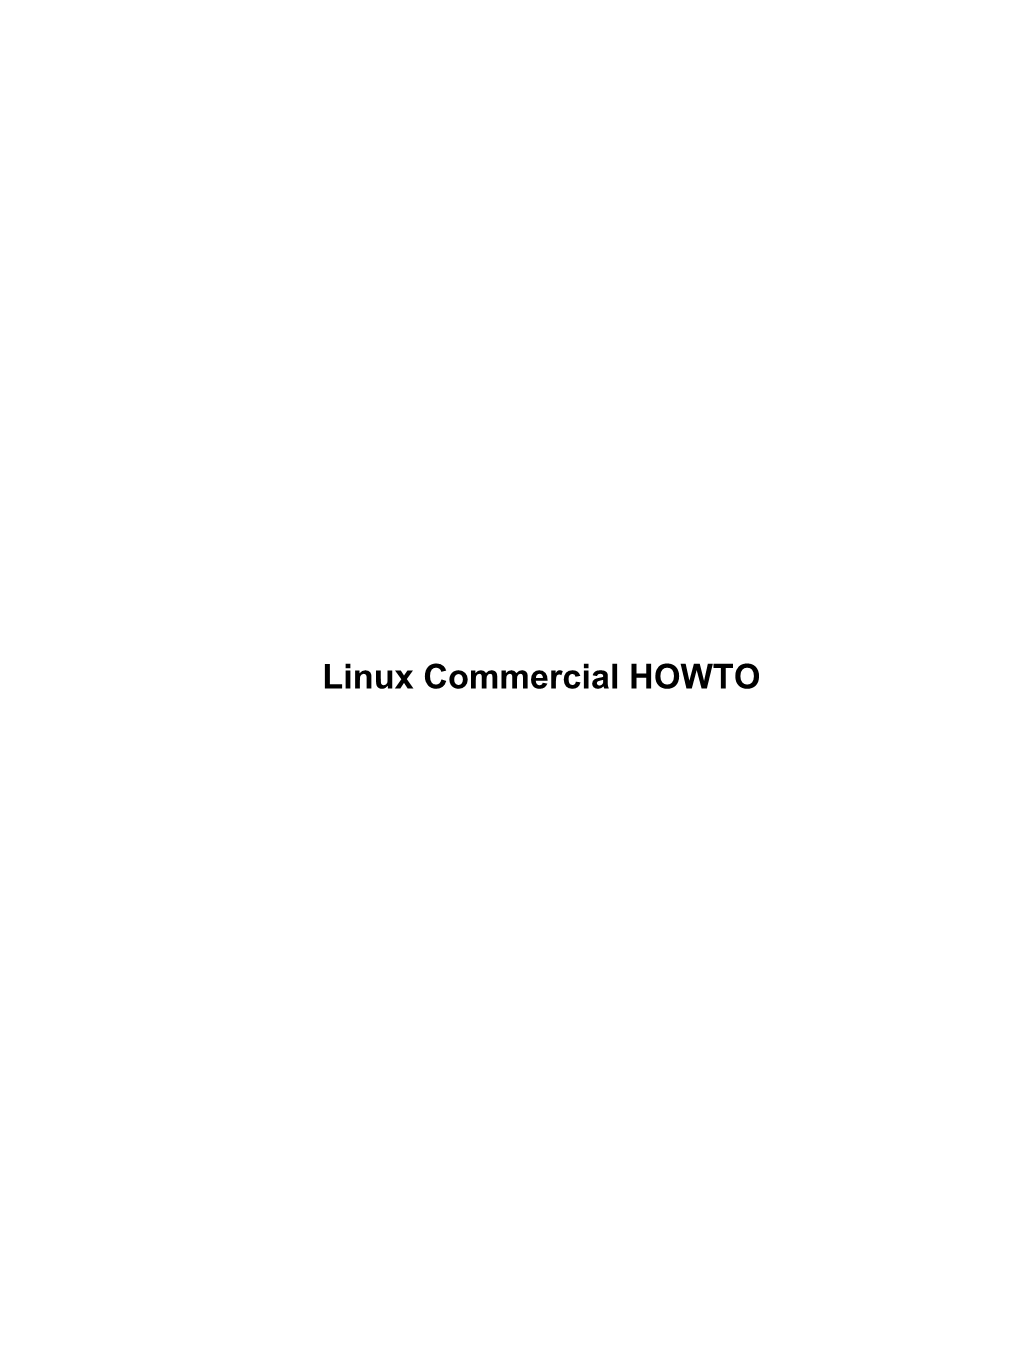 Linux Commercial HOWTO Linux Commercial HOWTO